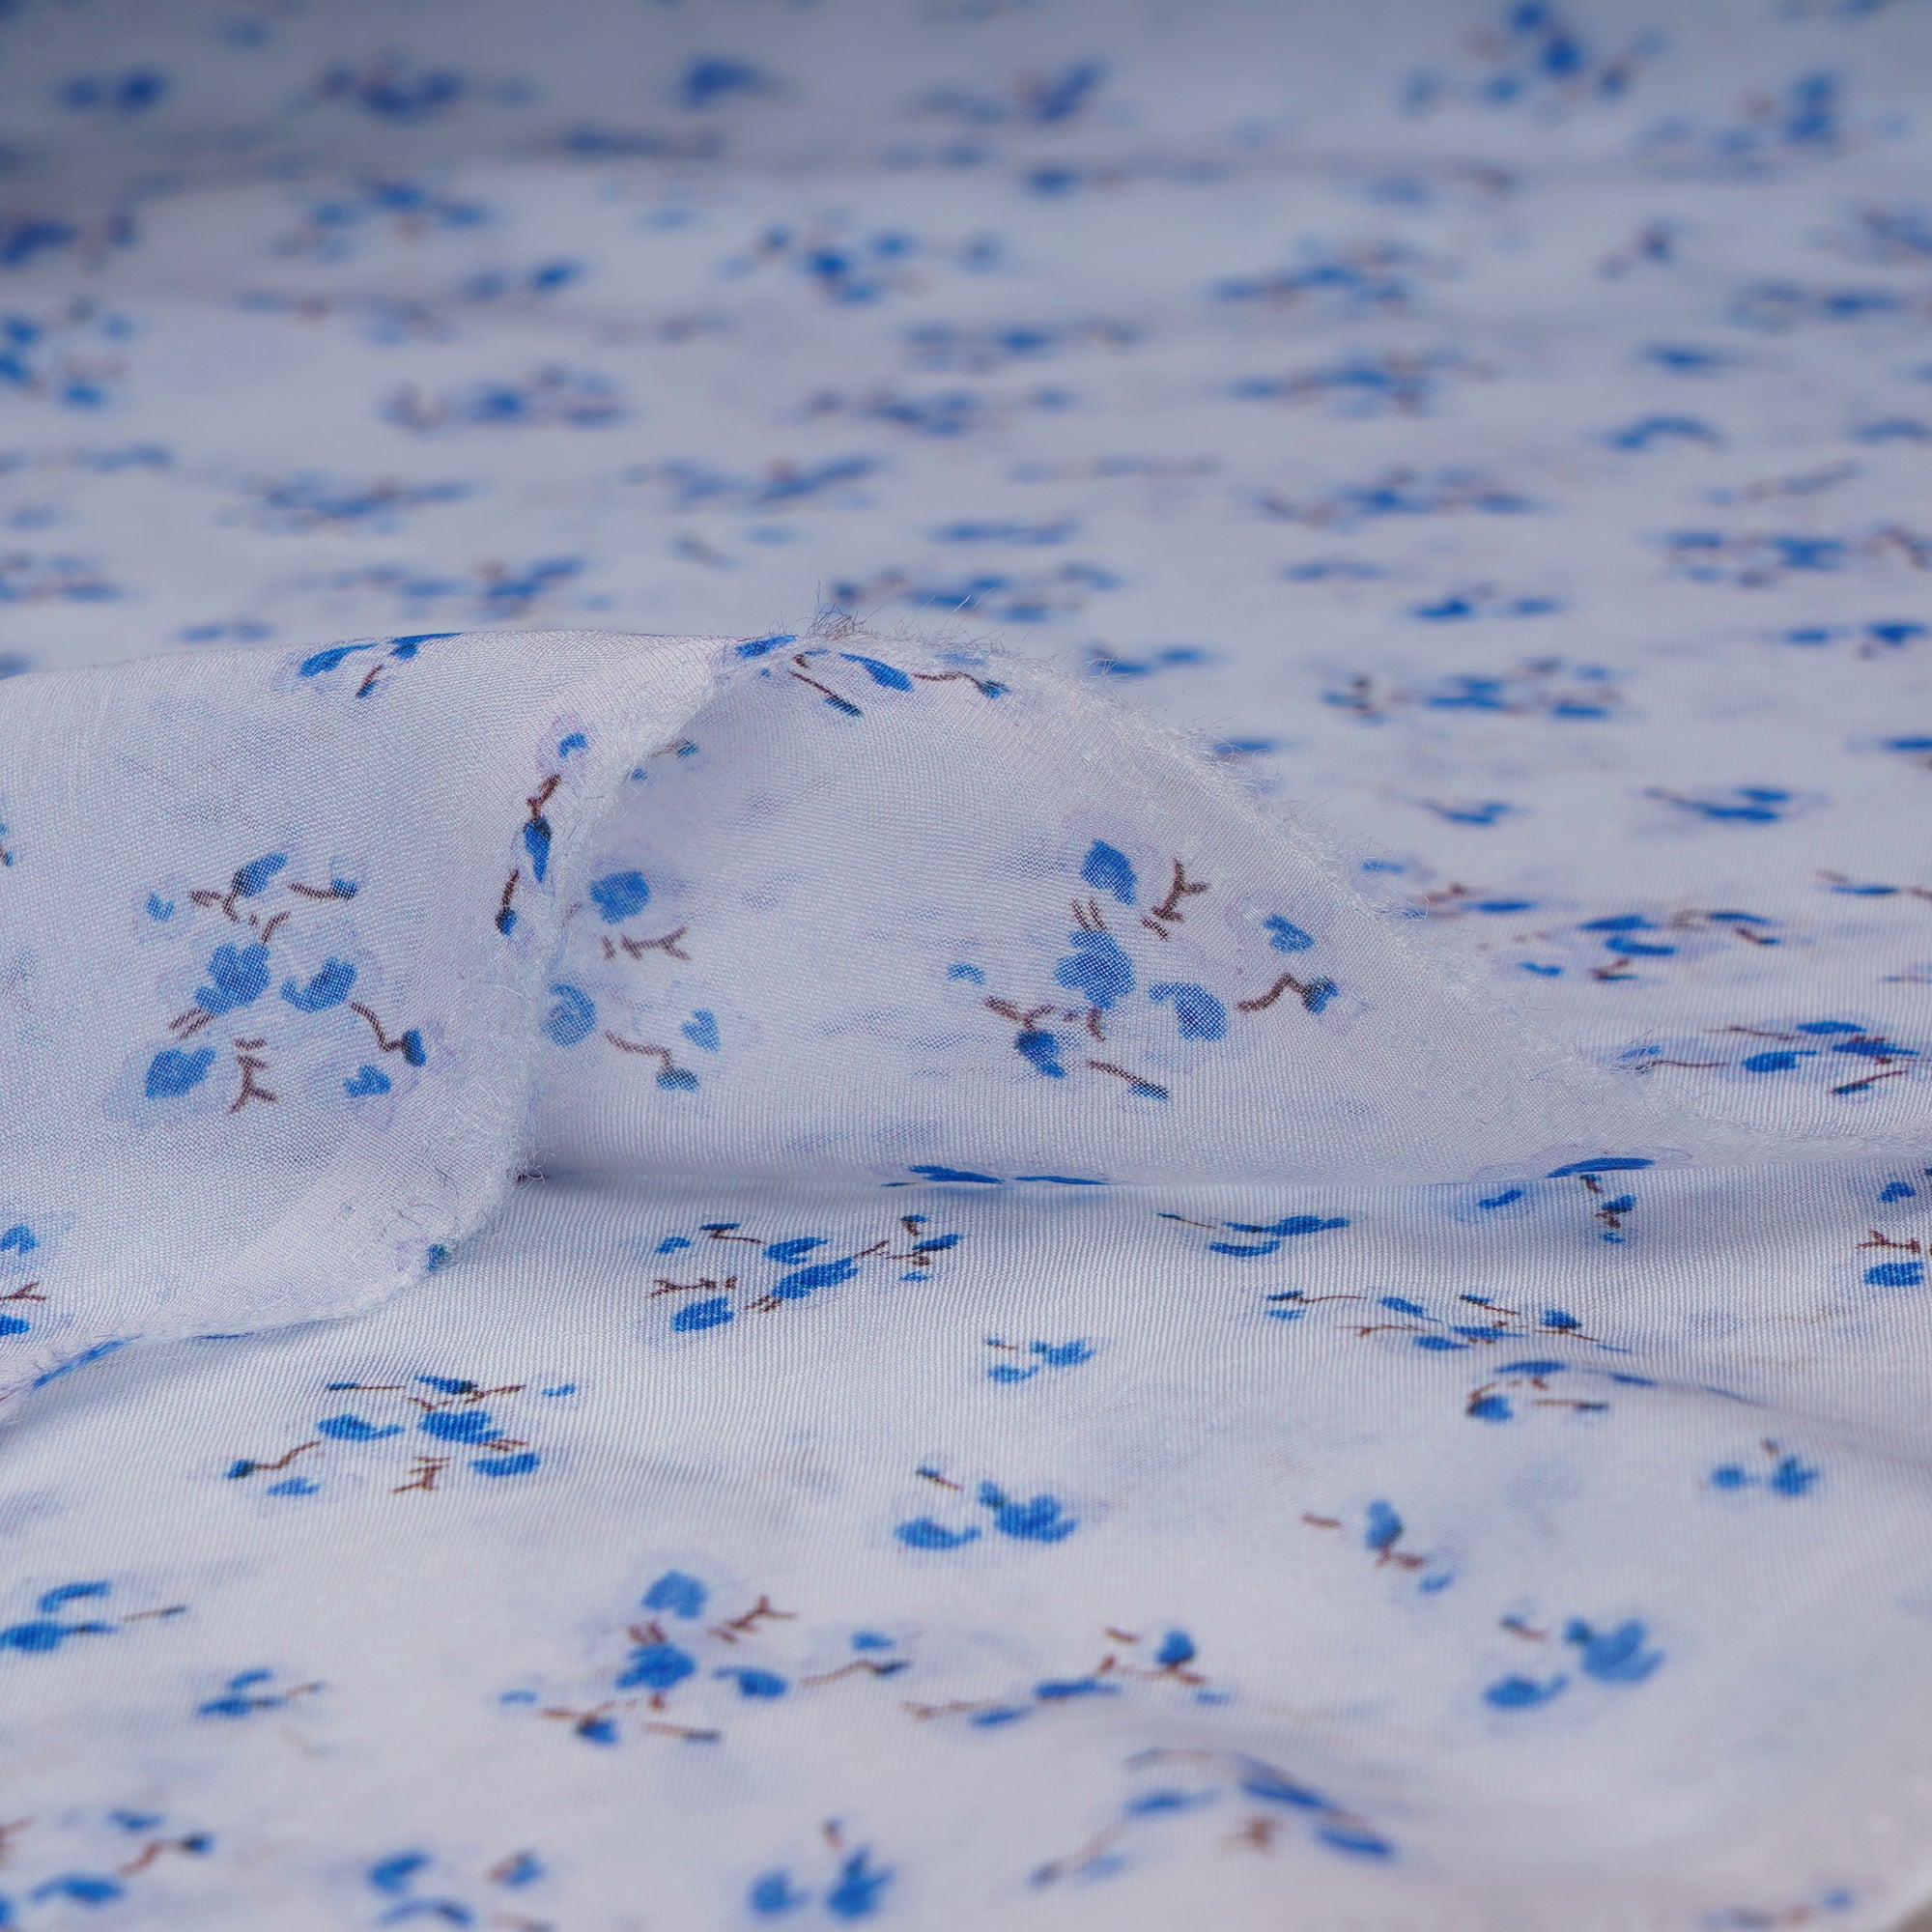 Blue Color Digital Printed Viscose Organza Fabric